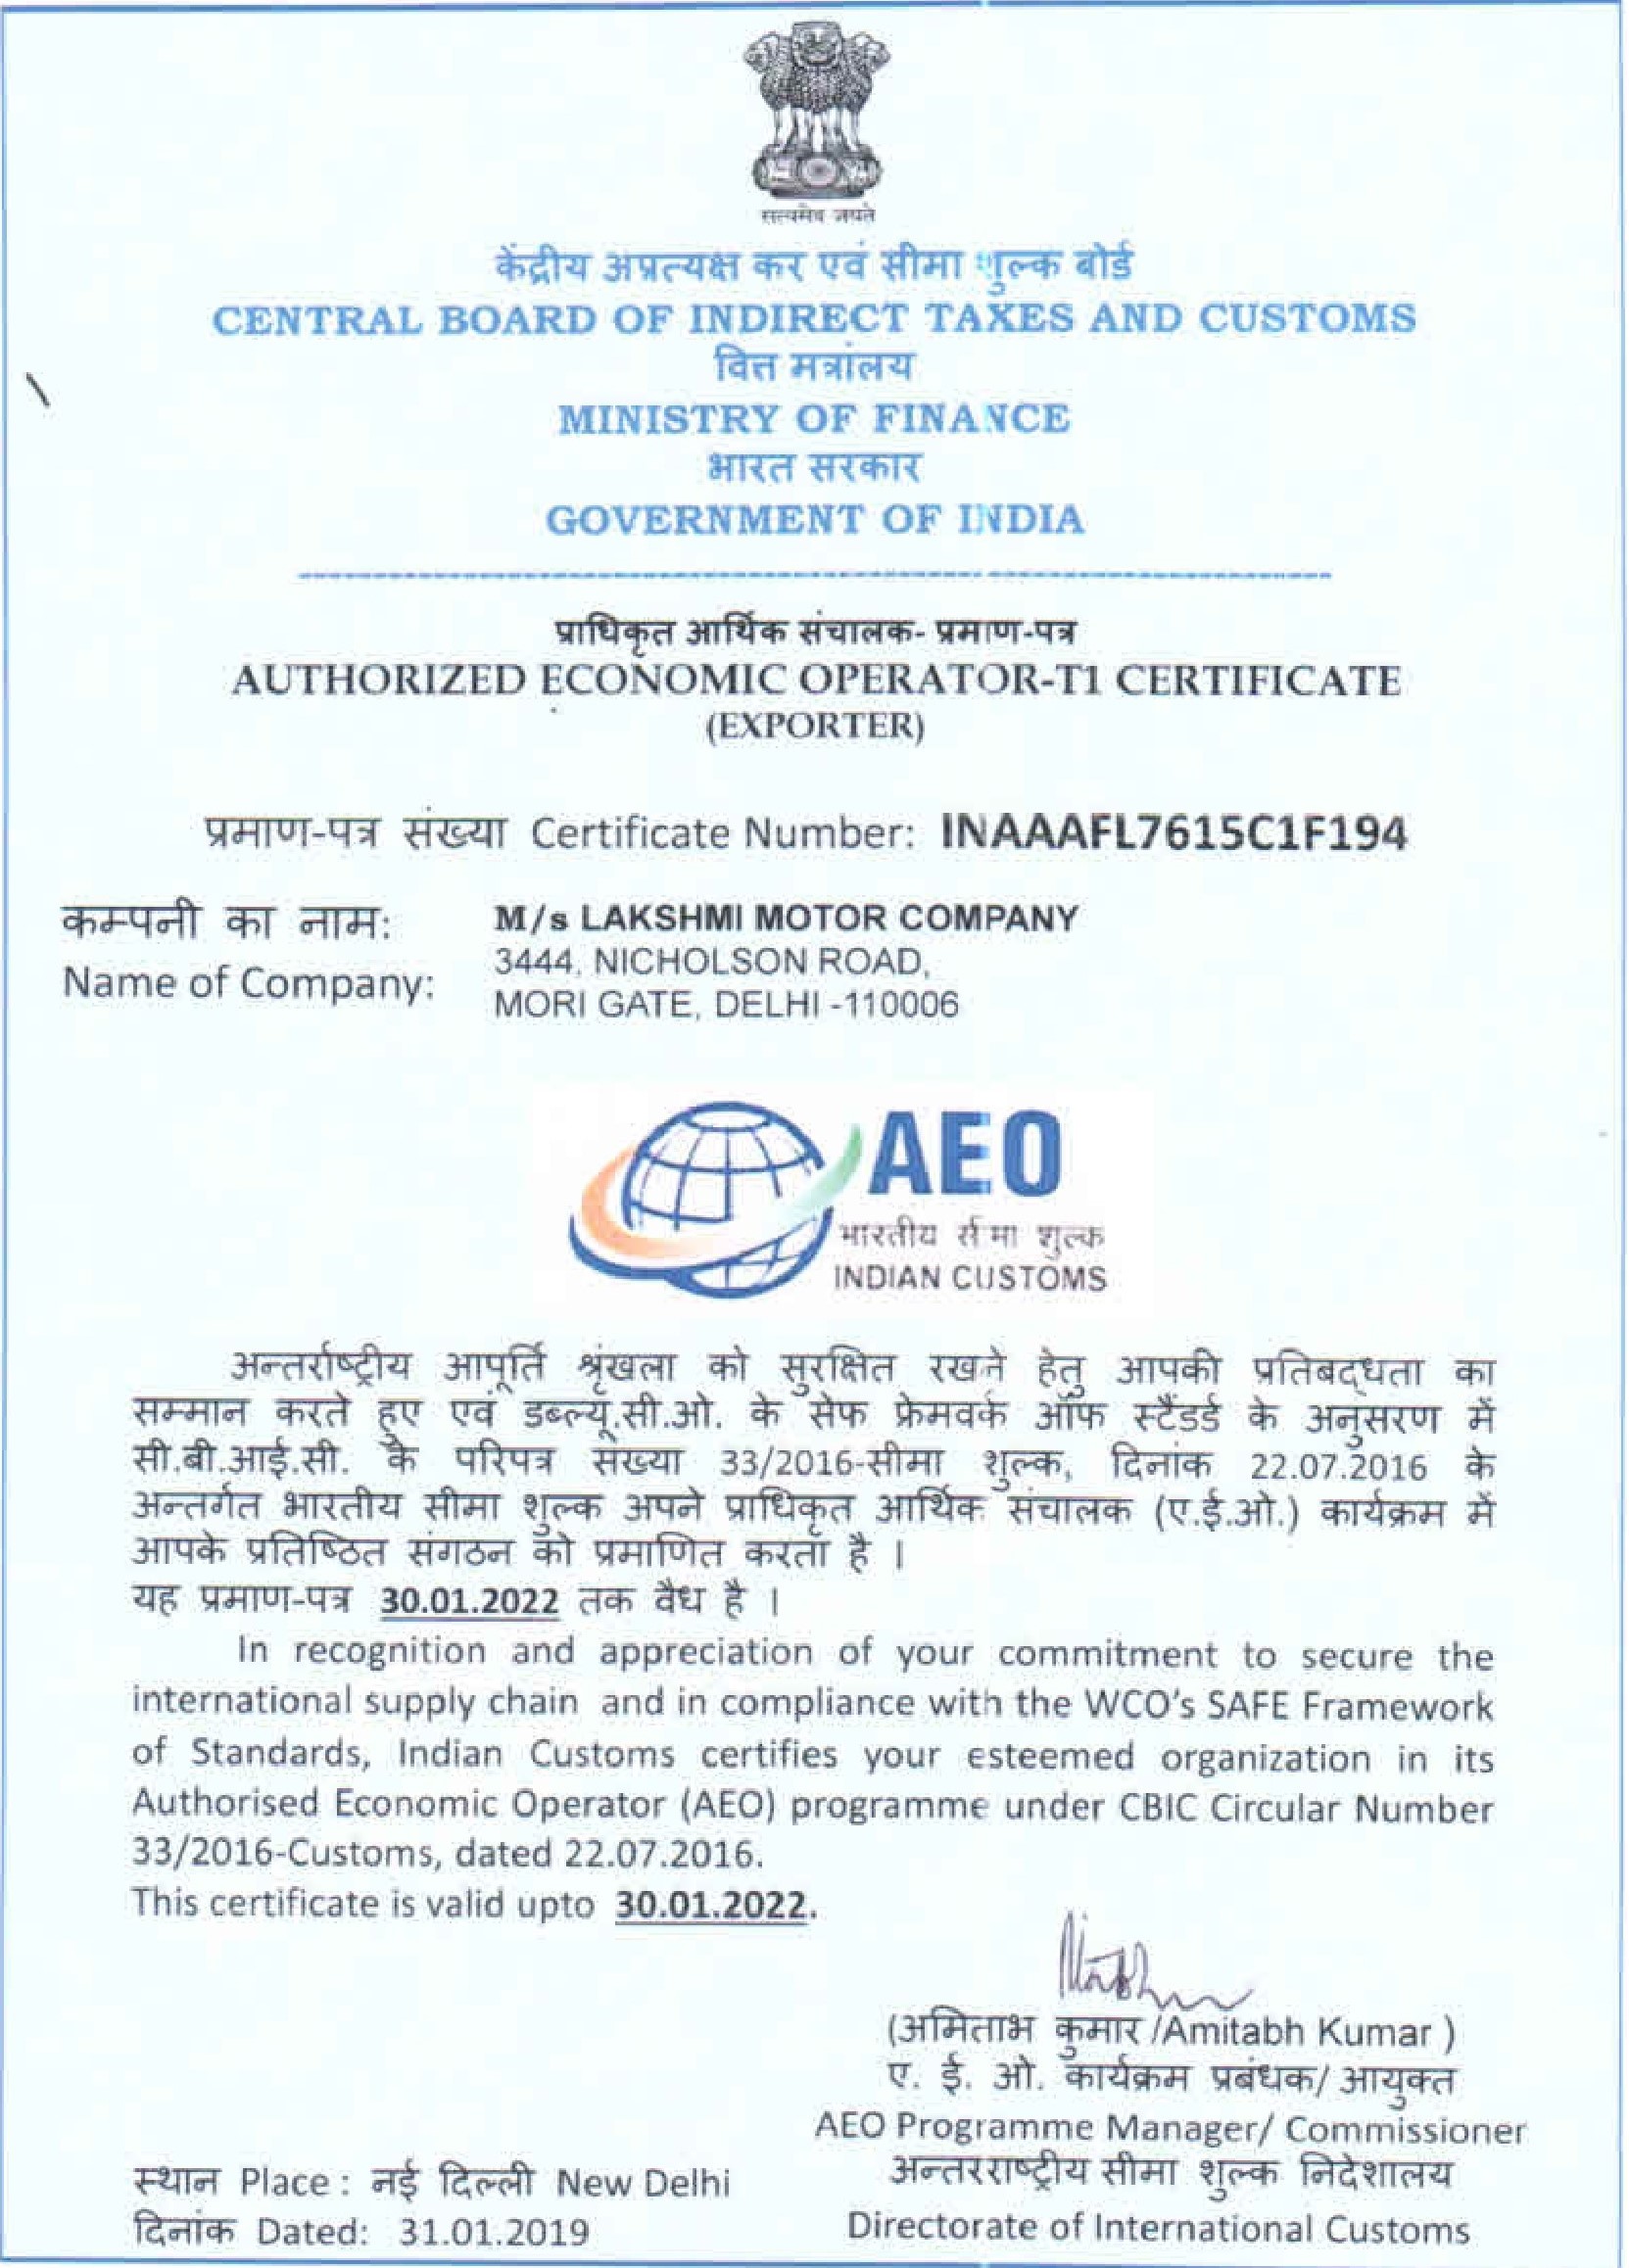 Authorised Economic Operator Certificate